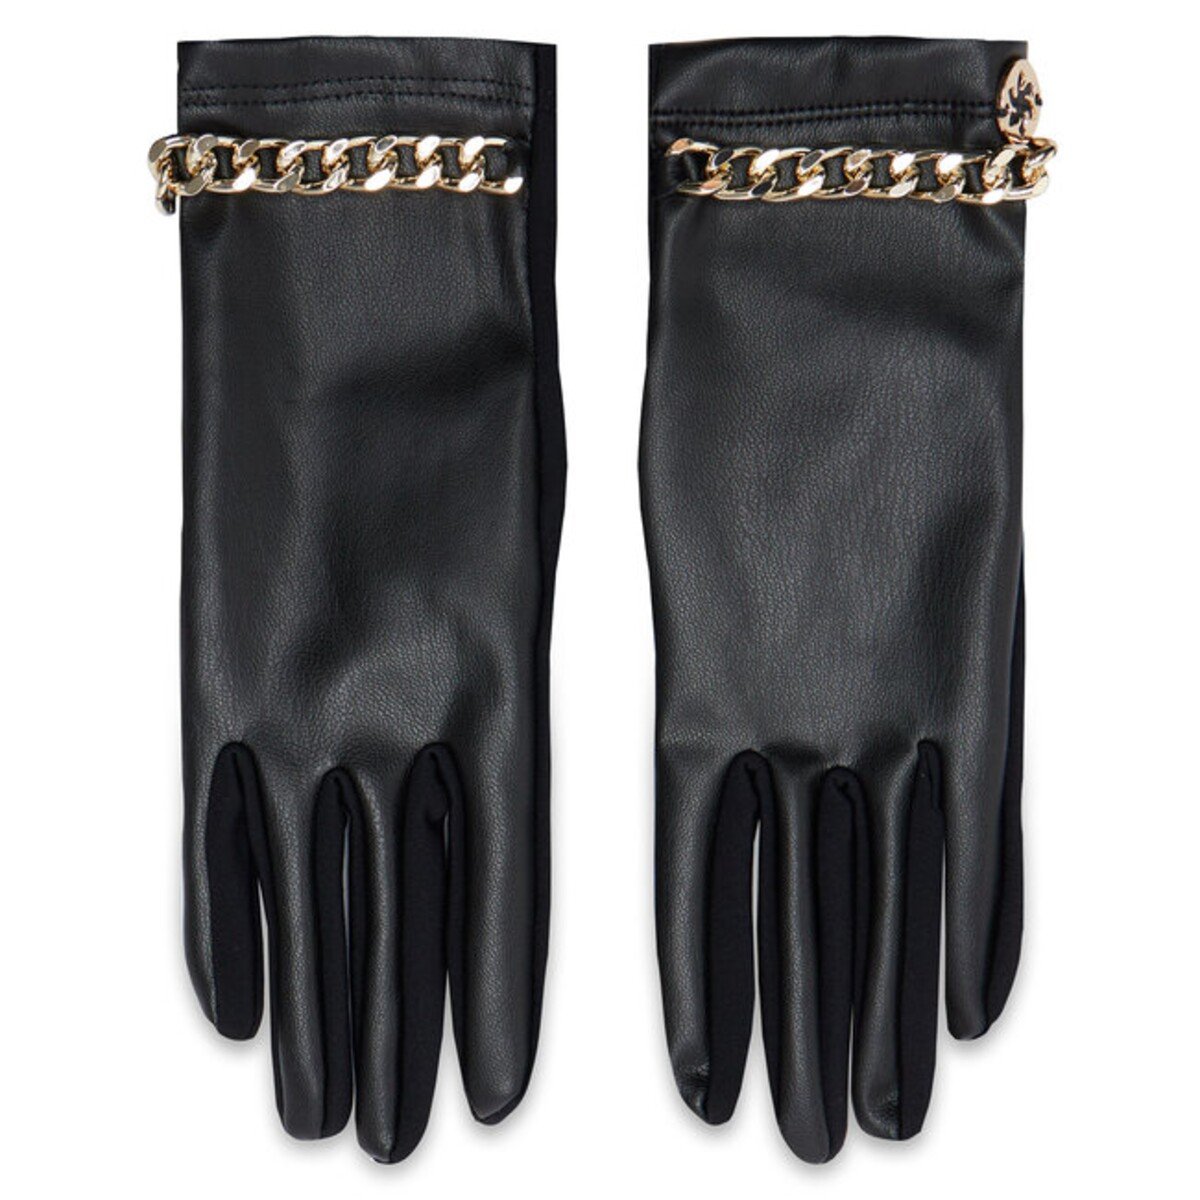 Dámske koženkové rukavice so zlatým patentom môžeš mať za 29 eur. Ponúka ti ich značka GRANADILLA.